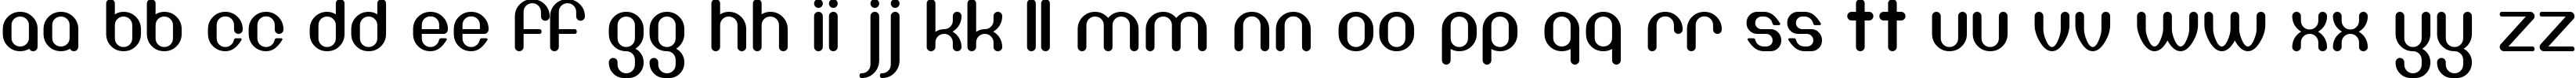 Пример написания английского алфавита шрифтом DF667  Chlorine